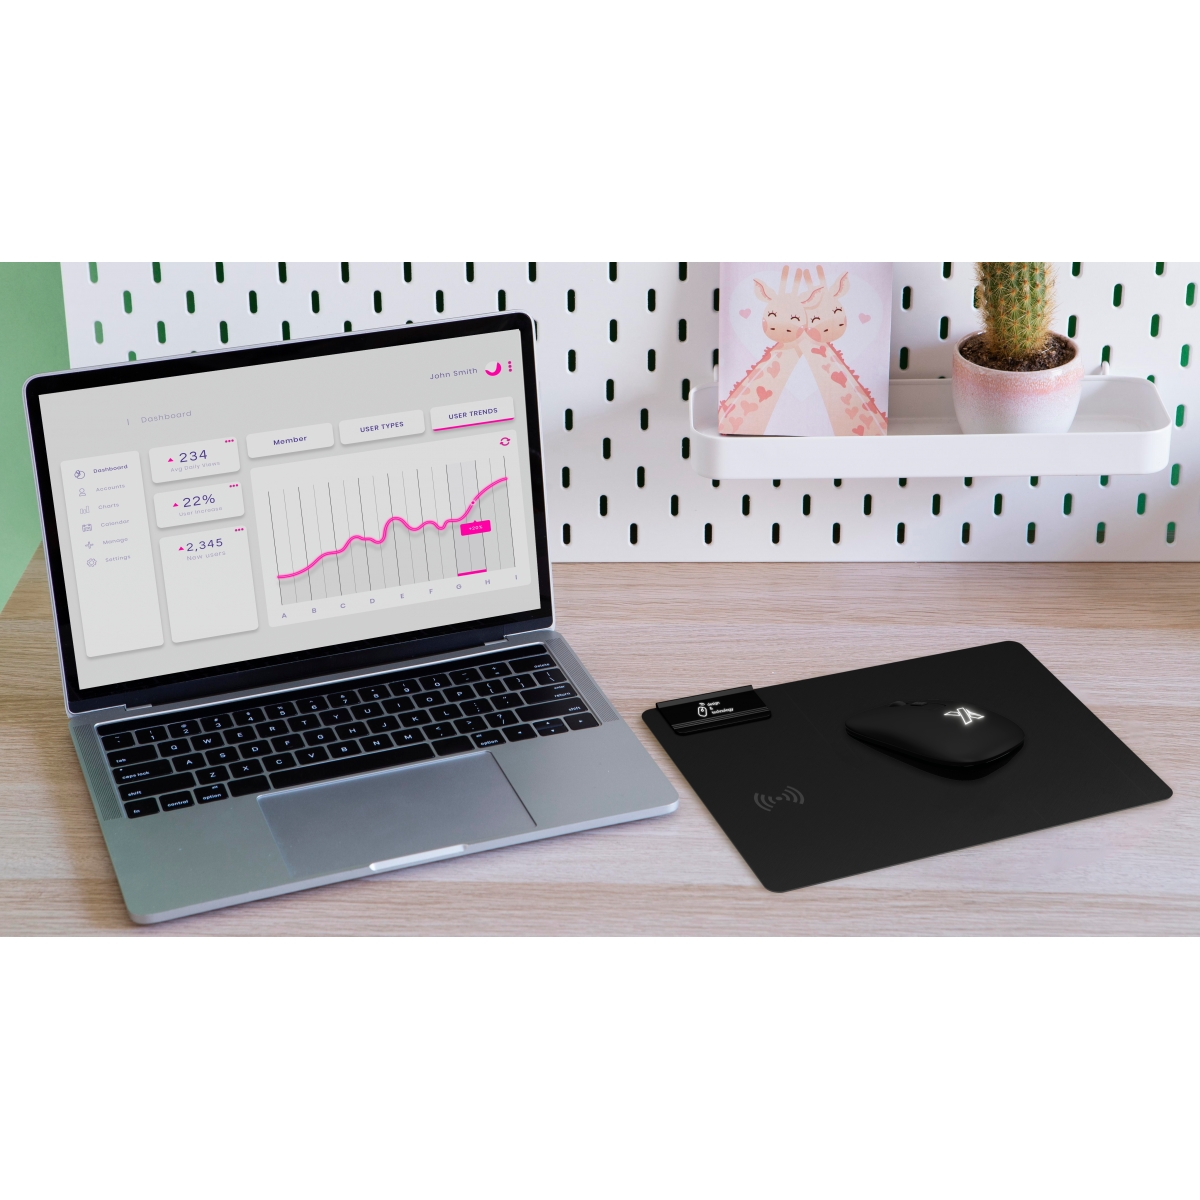 O26 - Foldable mouse pad